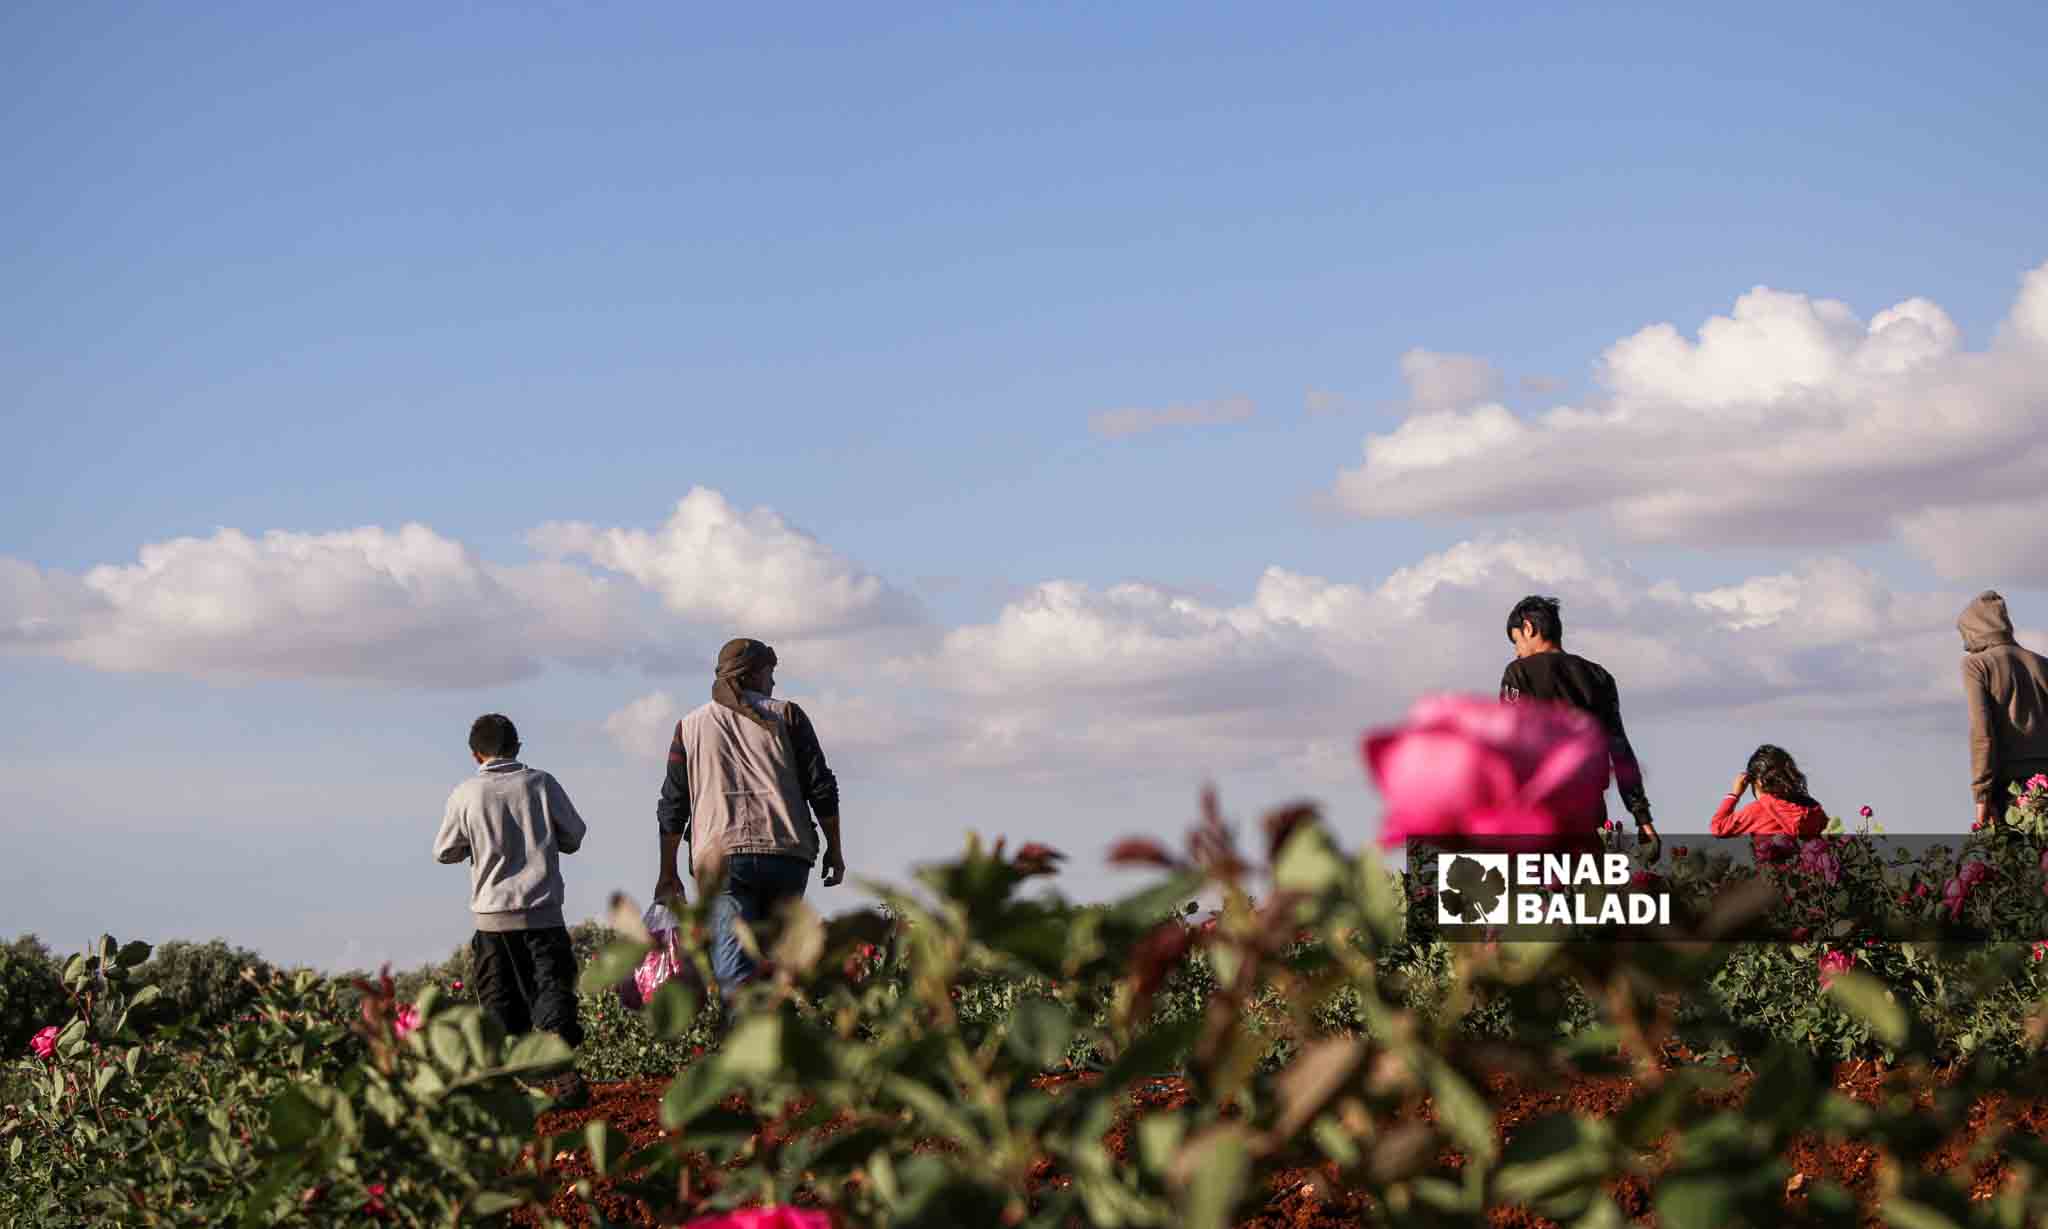 حرارة الجو ونوعية التربية في الشمال السوري مناسبَان لزراعة الورد الجوري
